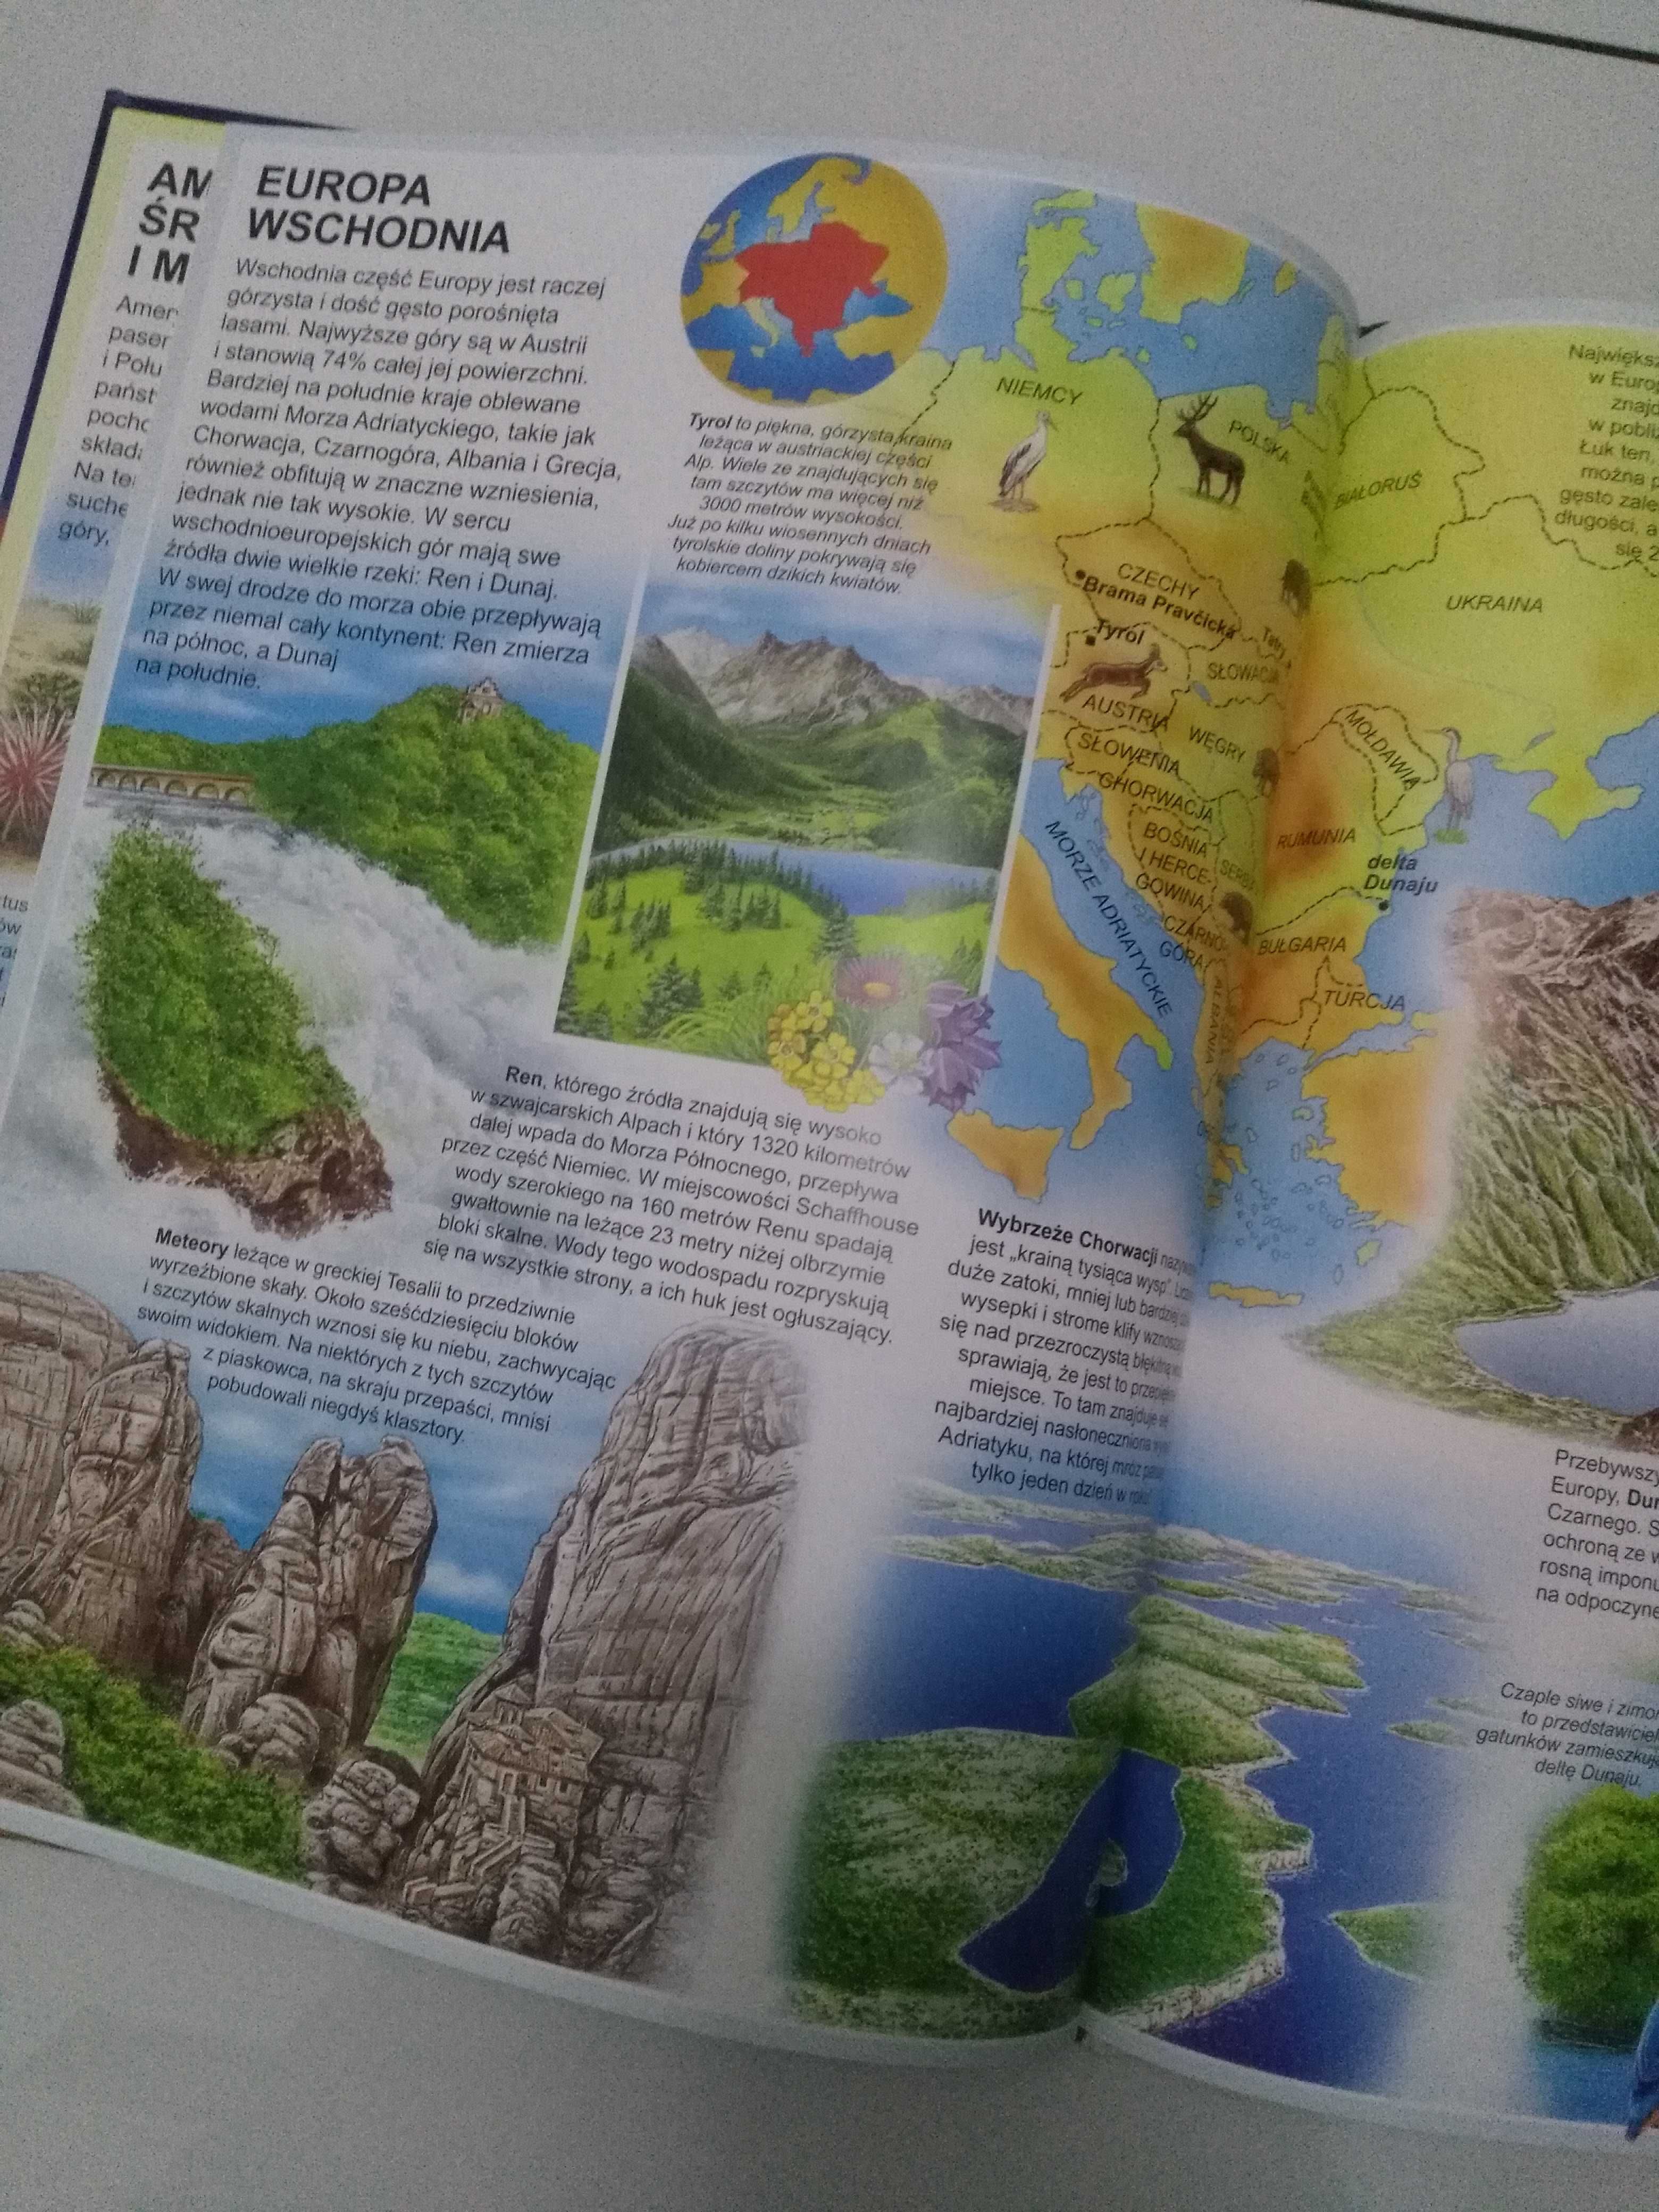 Atlas przyrody dla dzieci